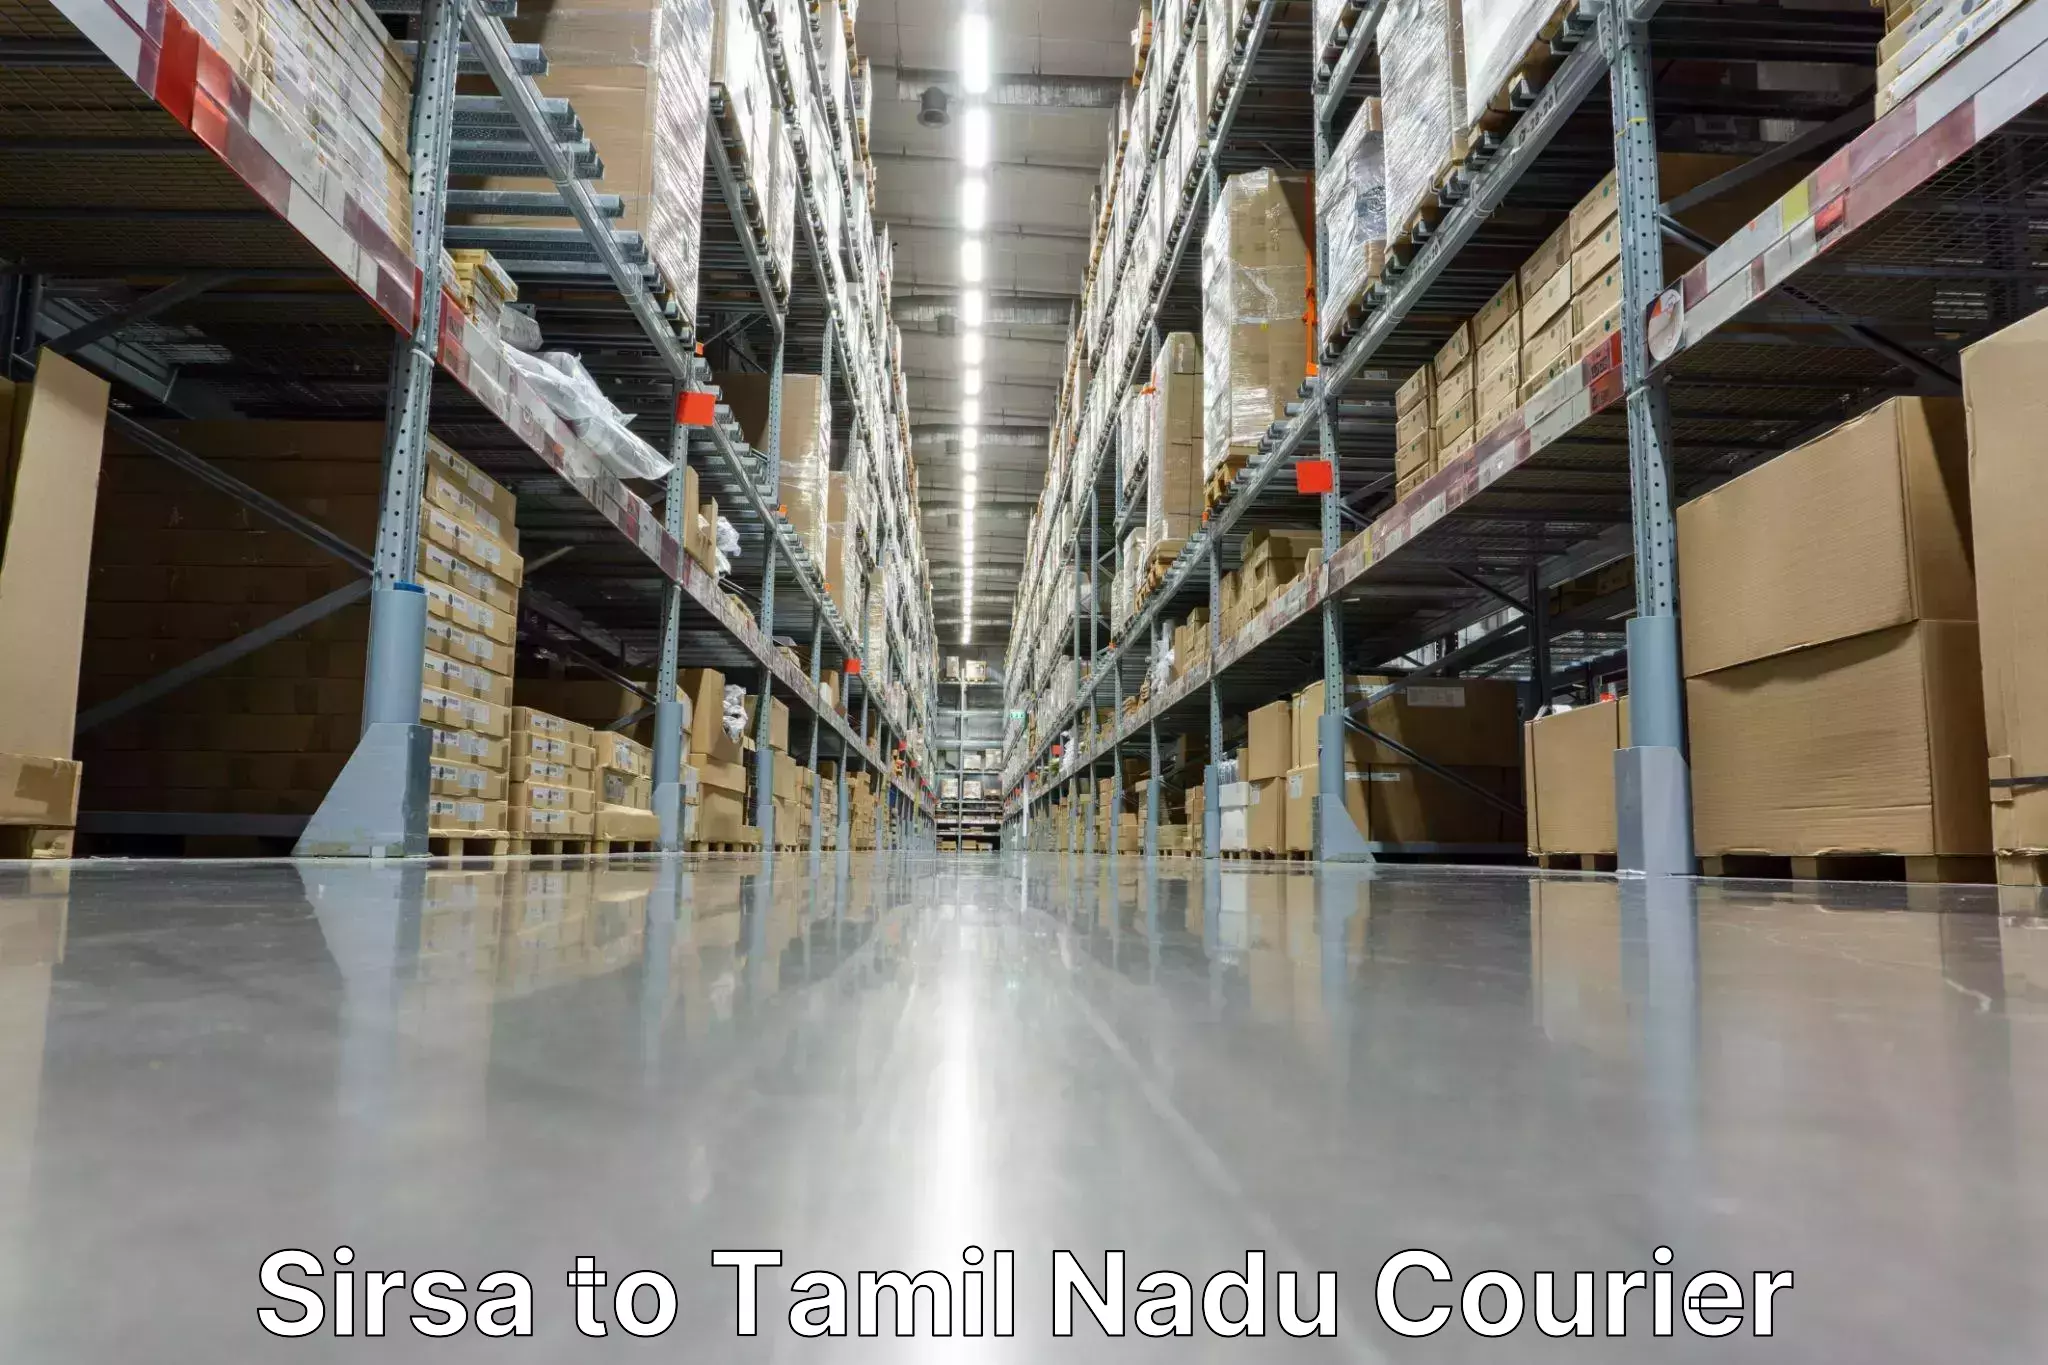 Global logistics network Sirsa to Tamil Nadu